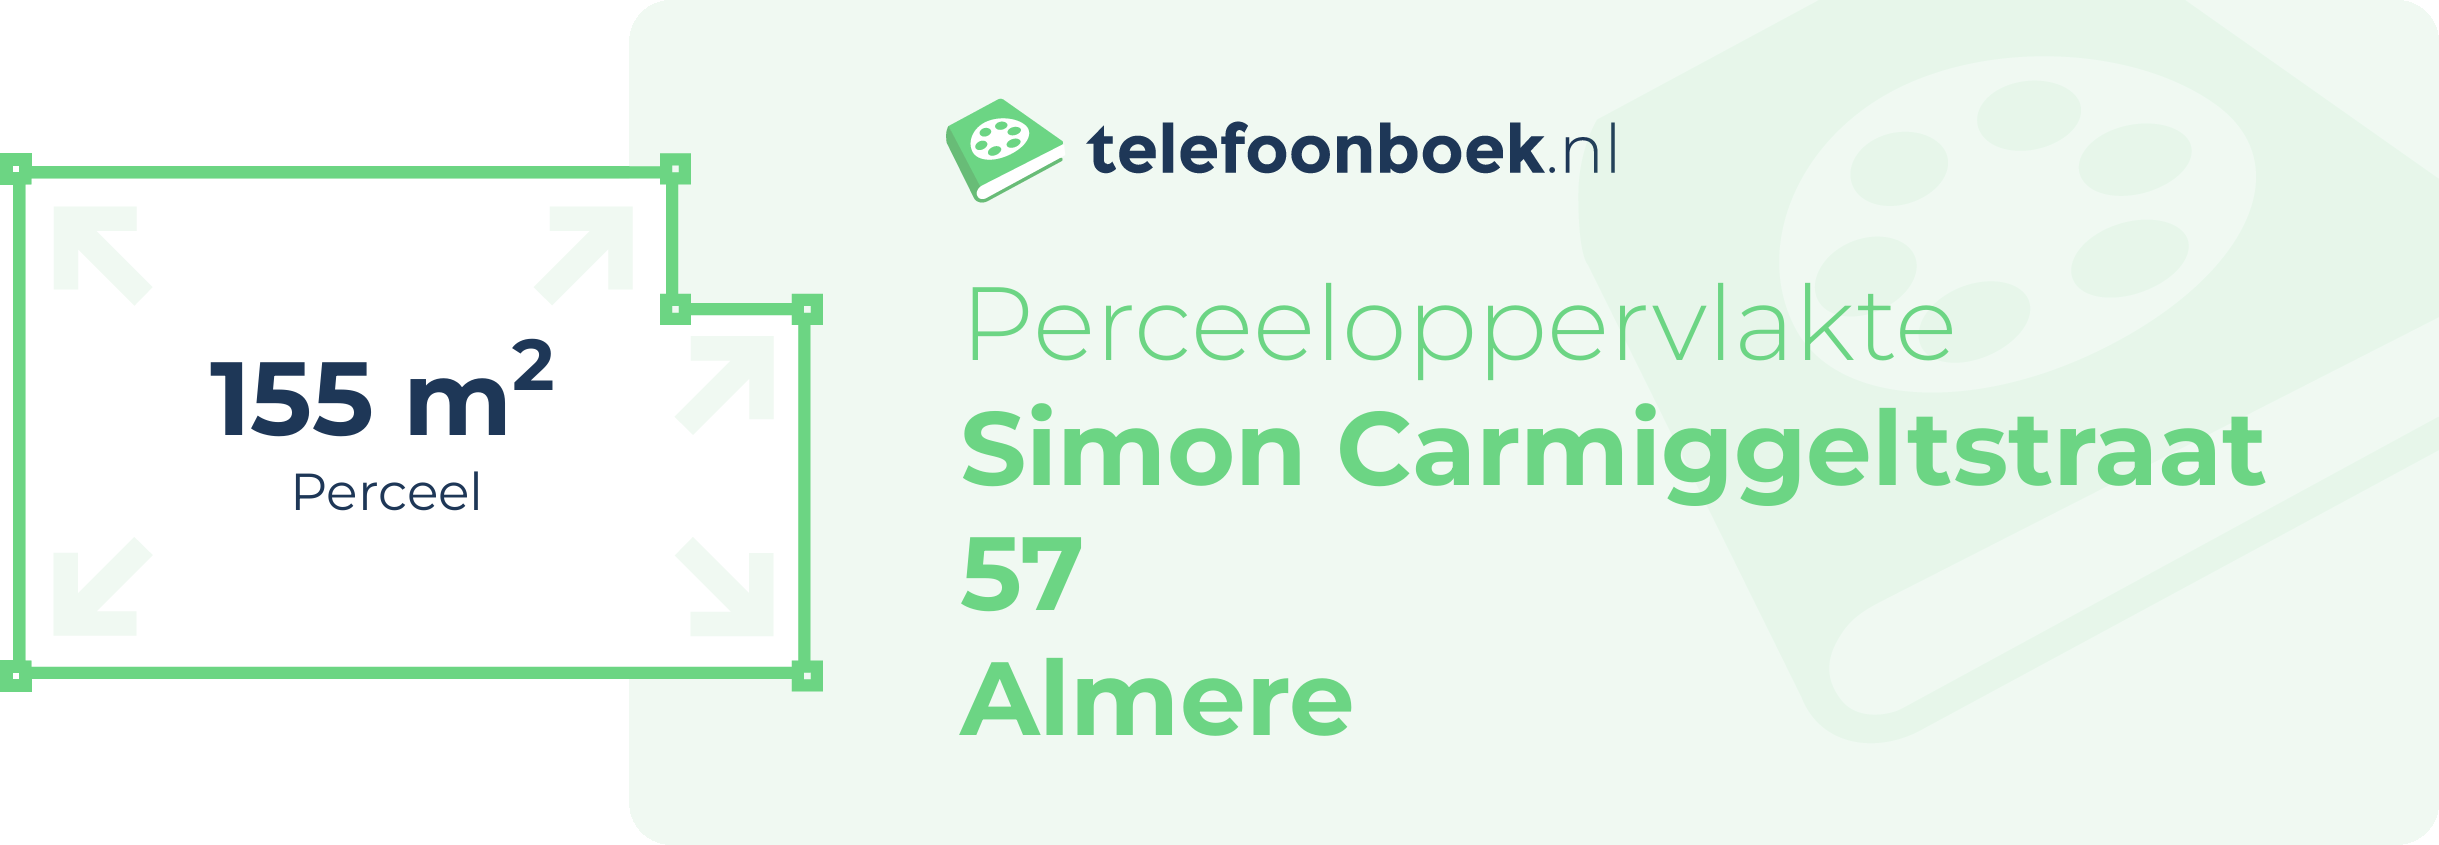 Perceeloppervlakte Simon Carmiggeltstraat 57 Almere